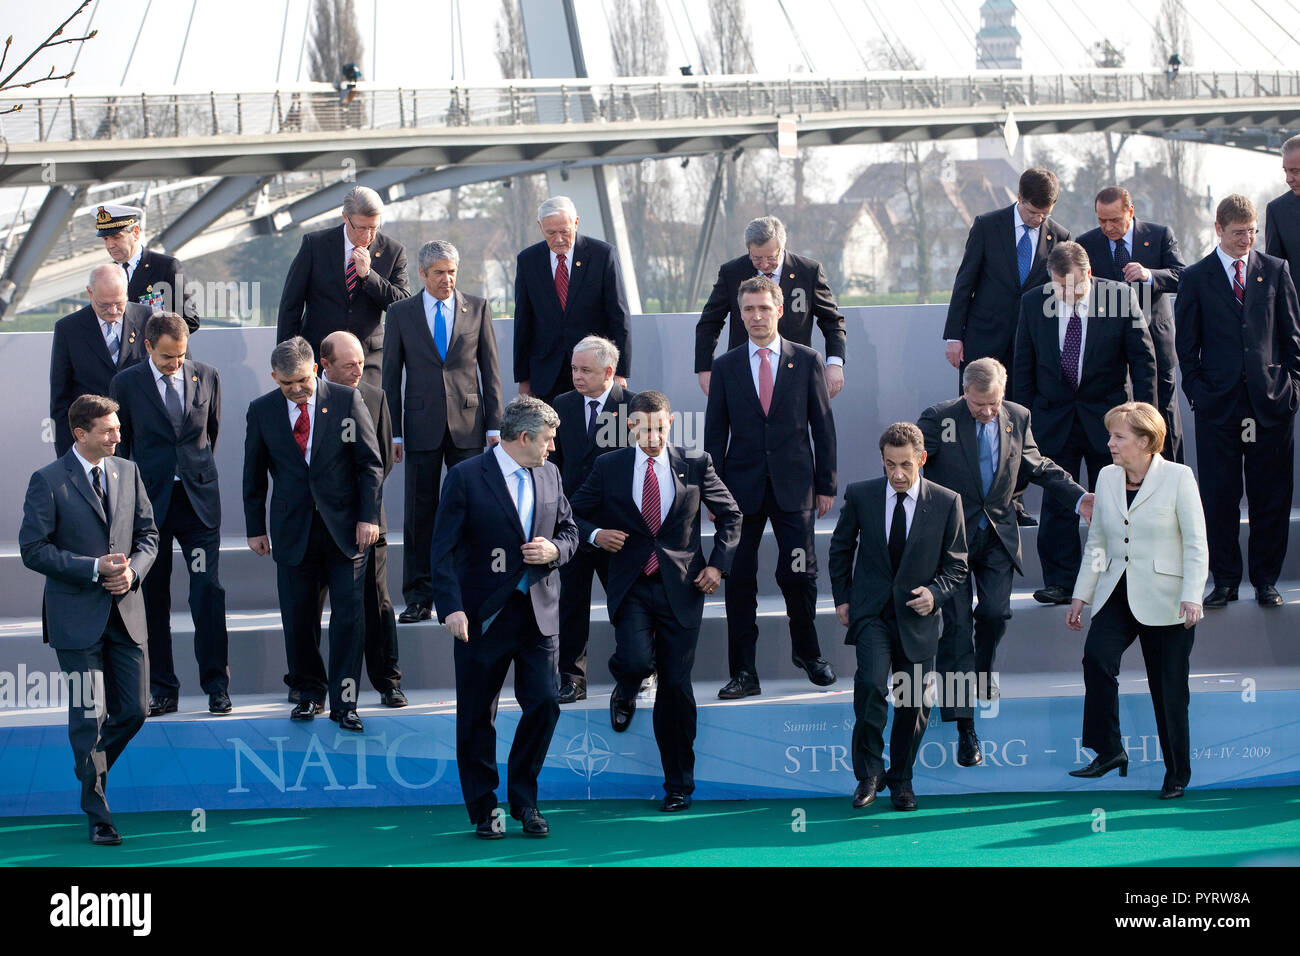 Le président Barack Obama, le Secrétaire général de l'OTAN, Jaap de Hoop  Scheffer, et d'autres dirigeants de l'OTAN l'étape vers le bas d'une  plate-forme de photo le 4 avril 2009, à la